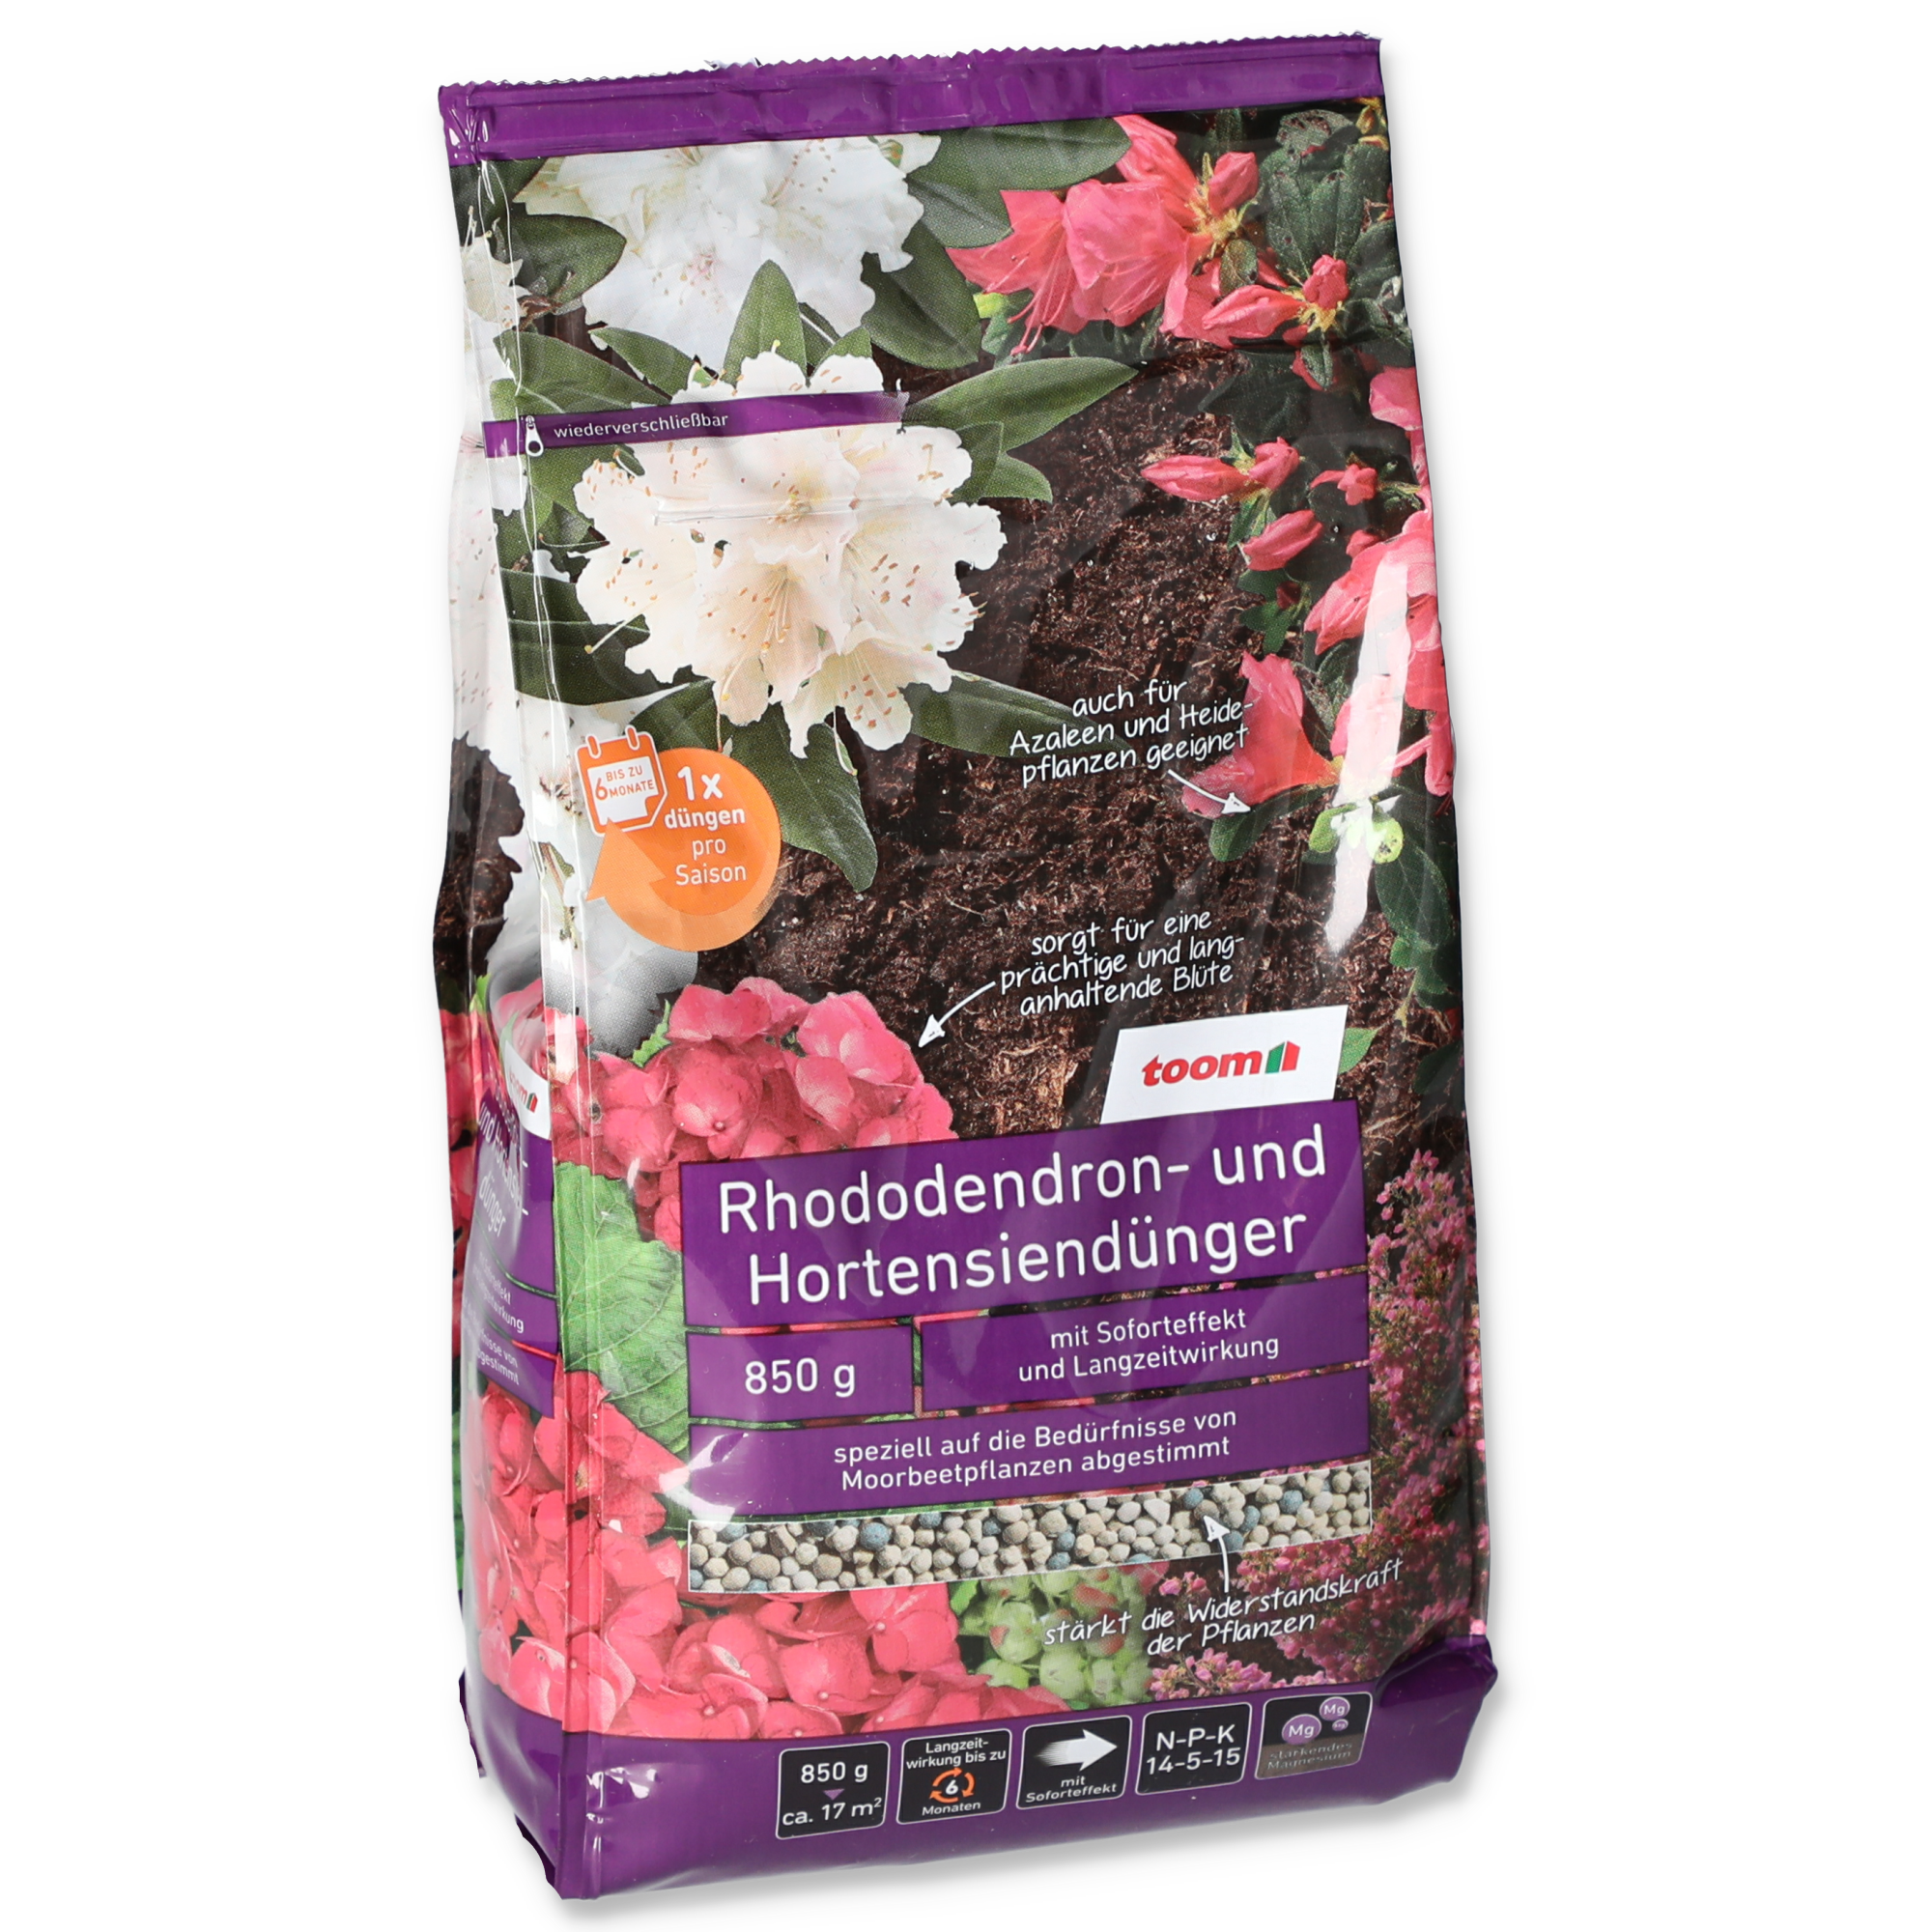 Rhododendron- und Hortensiendünger 850 g + product picture